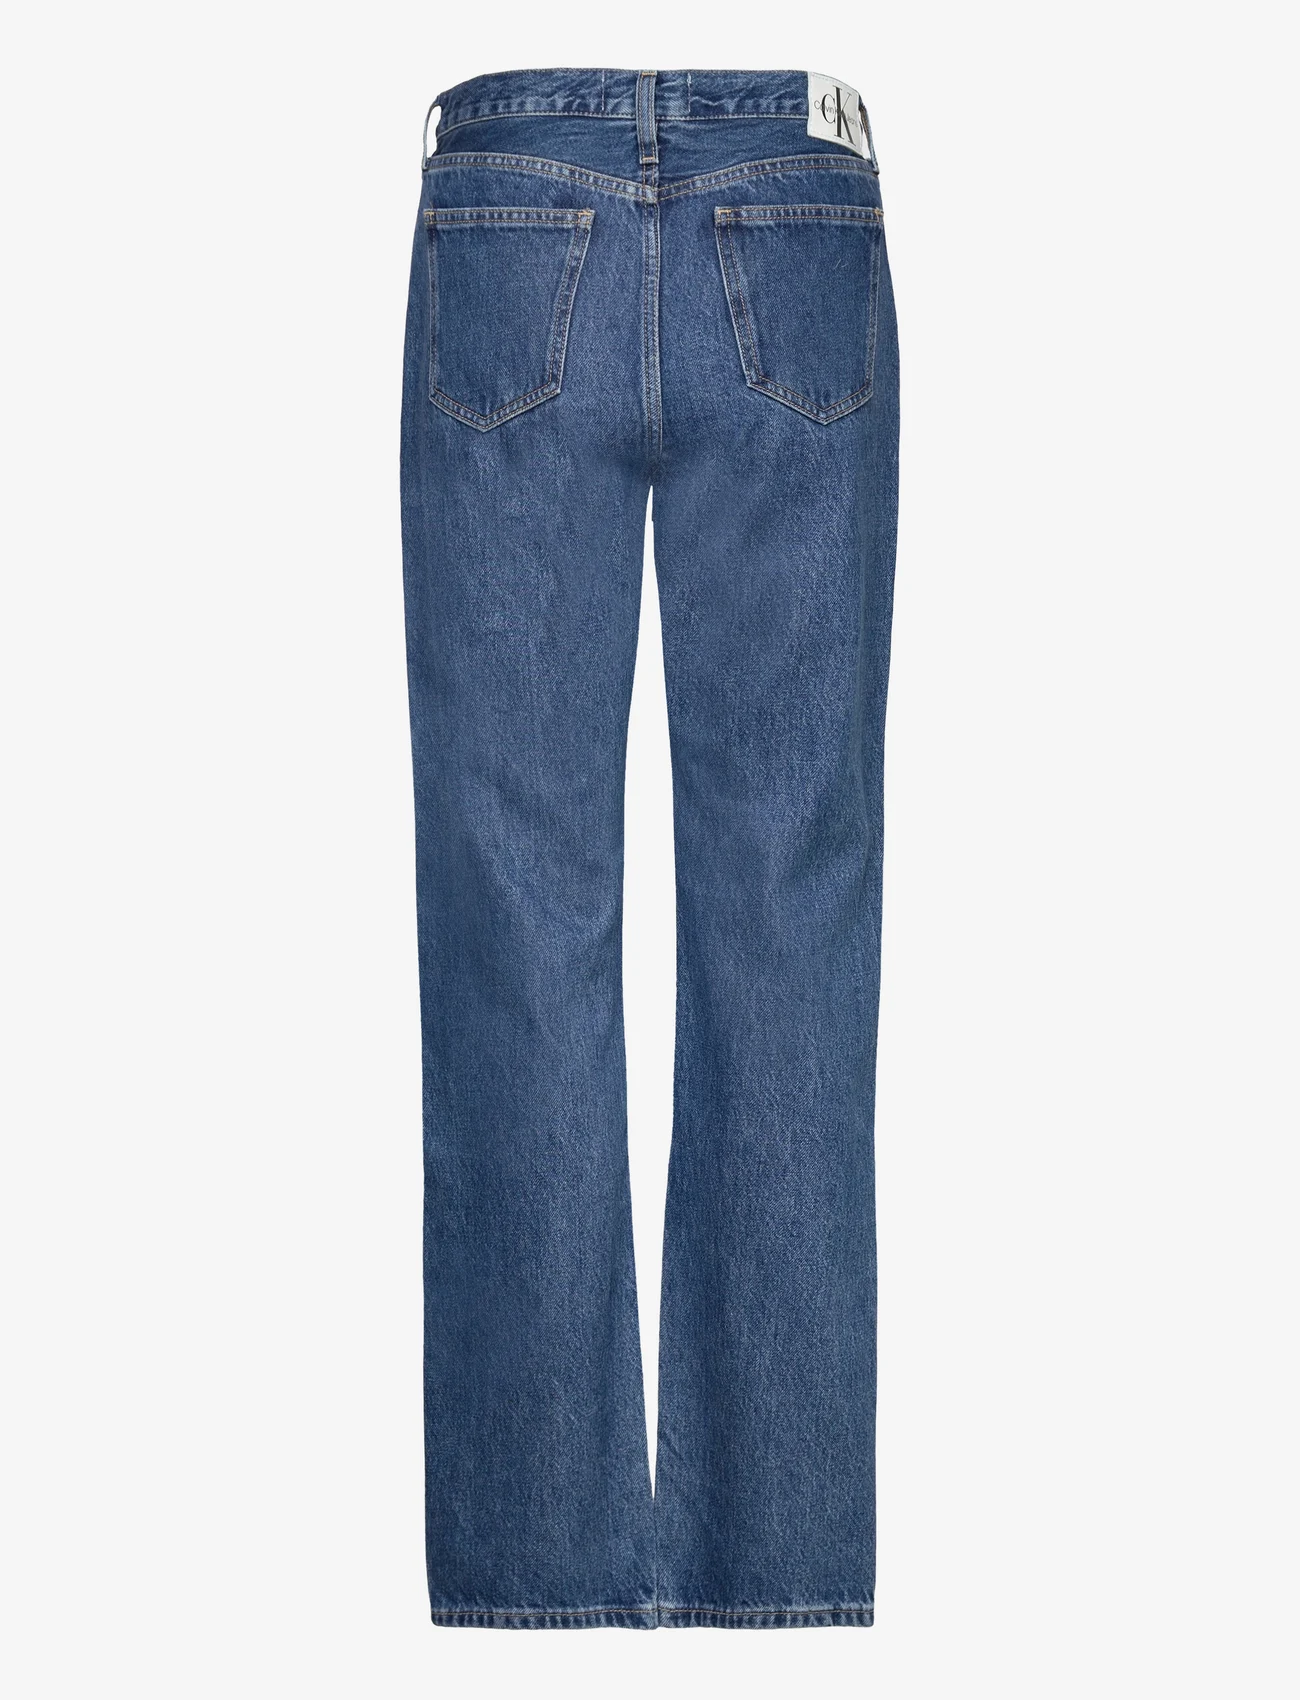 Calvin Klein Jeans - LOW RISE STRAIGHT - tiesaus kirpimo džinsai - denim medium - 1